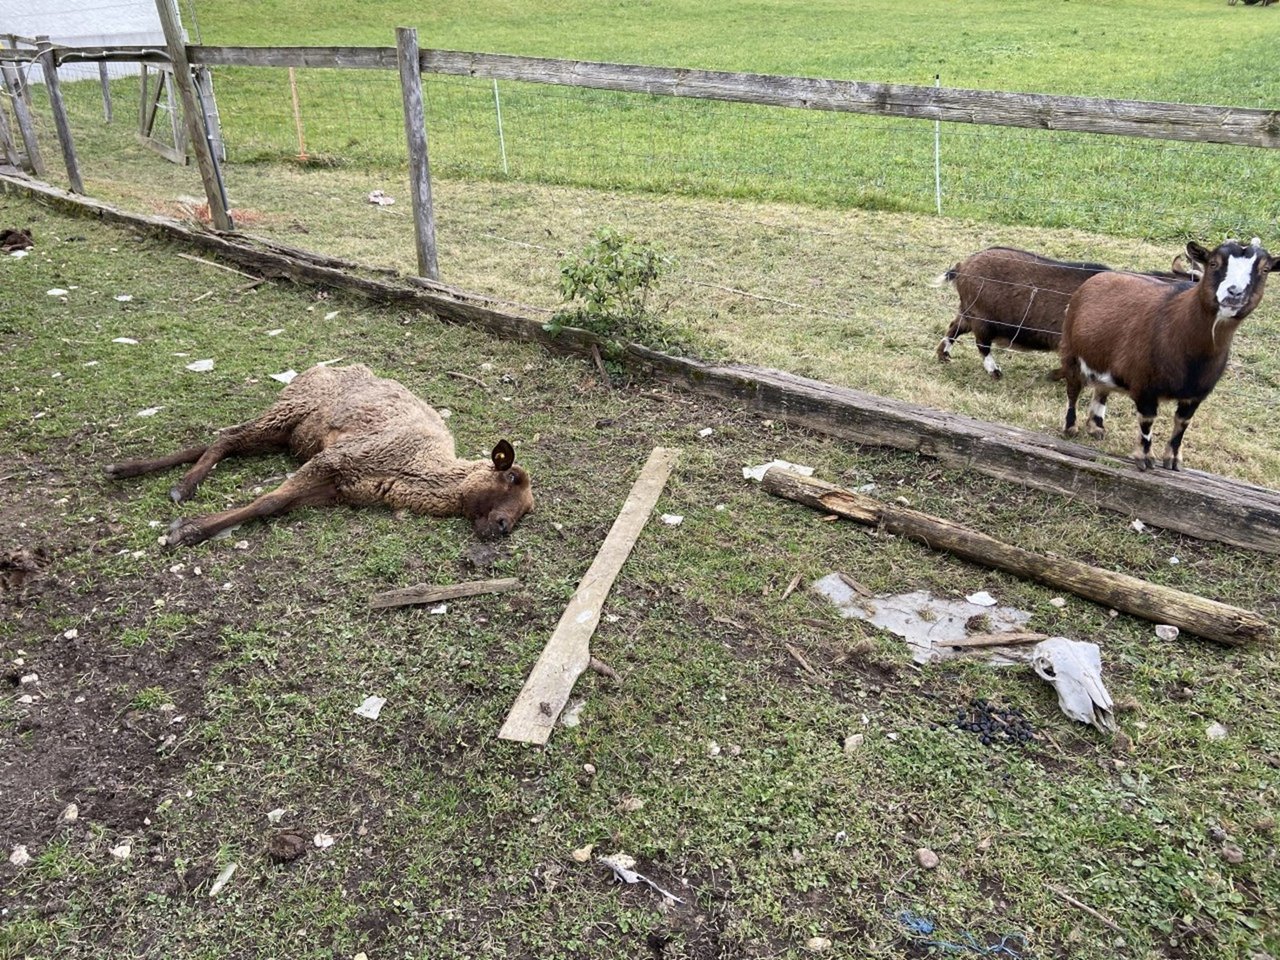 Der Tierschutzfall in Oftringen erregte im Februar Aufsehen. Ein 57-jähriger Schweizer Tierhalter war zunächst festgenommen worden, nachdem auf seinem Grundstück etliche tote Tiere und Tiere in teilweise sehr schlechtem zustand entdeckt worden waren. (Bild Kantonspolizei Aargau)